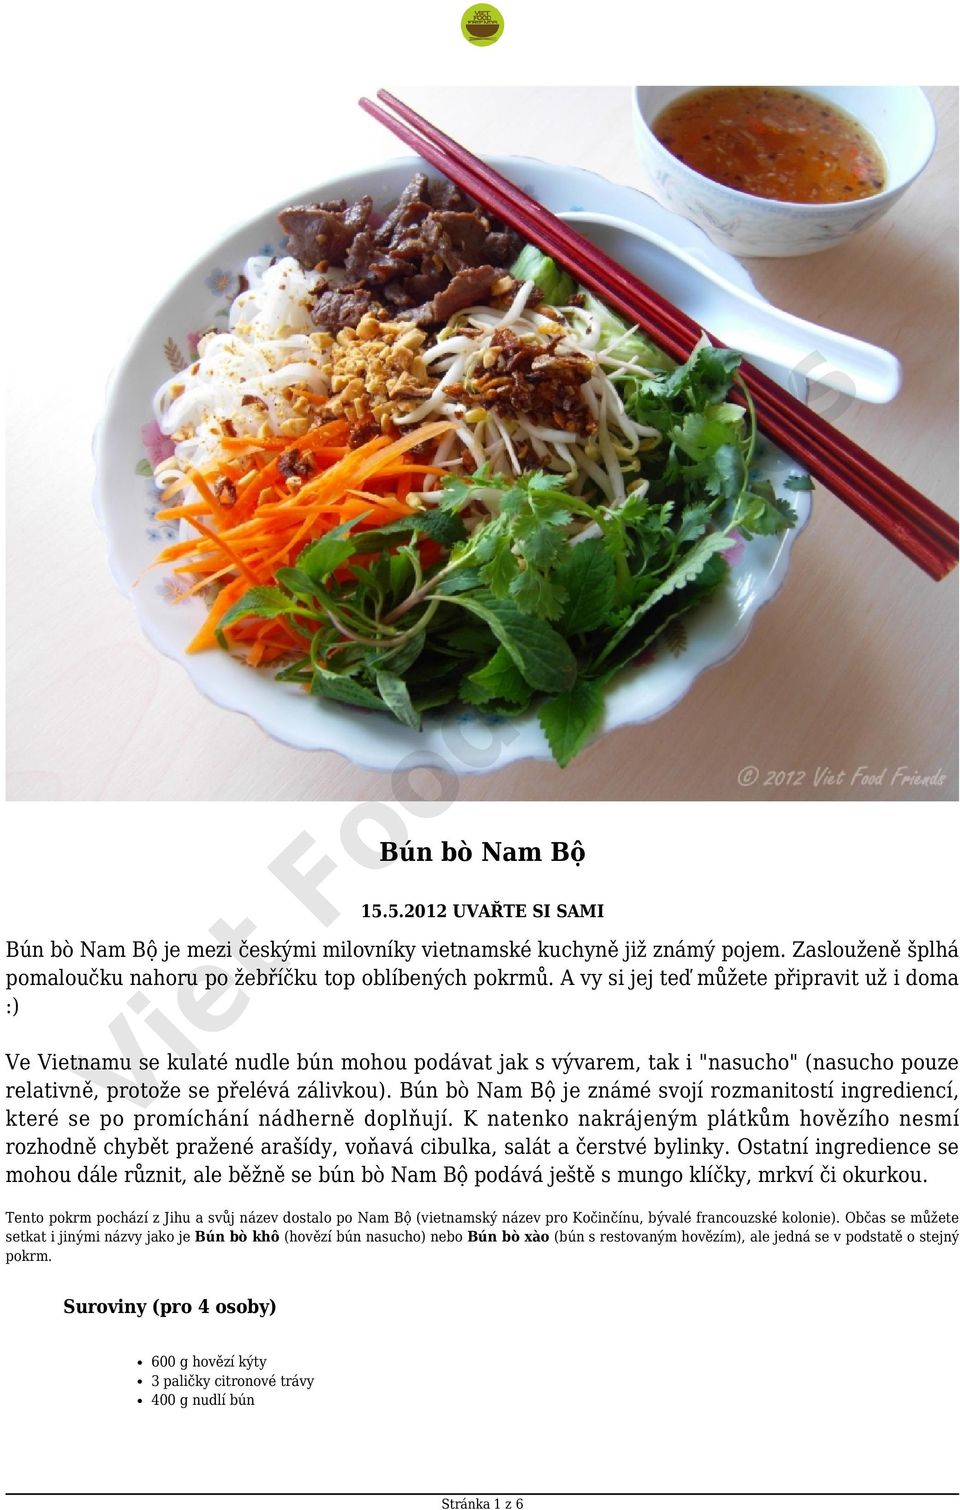 Bún bò Nam Bộ je známé svojí rozmanitostí ingrediencí, které se po promíchání nádherně doplňují.